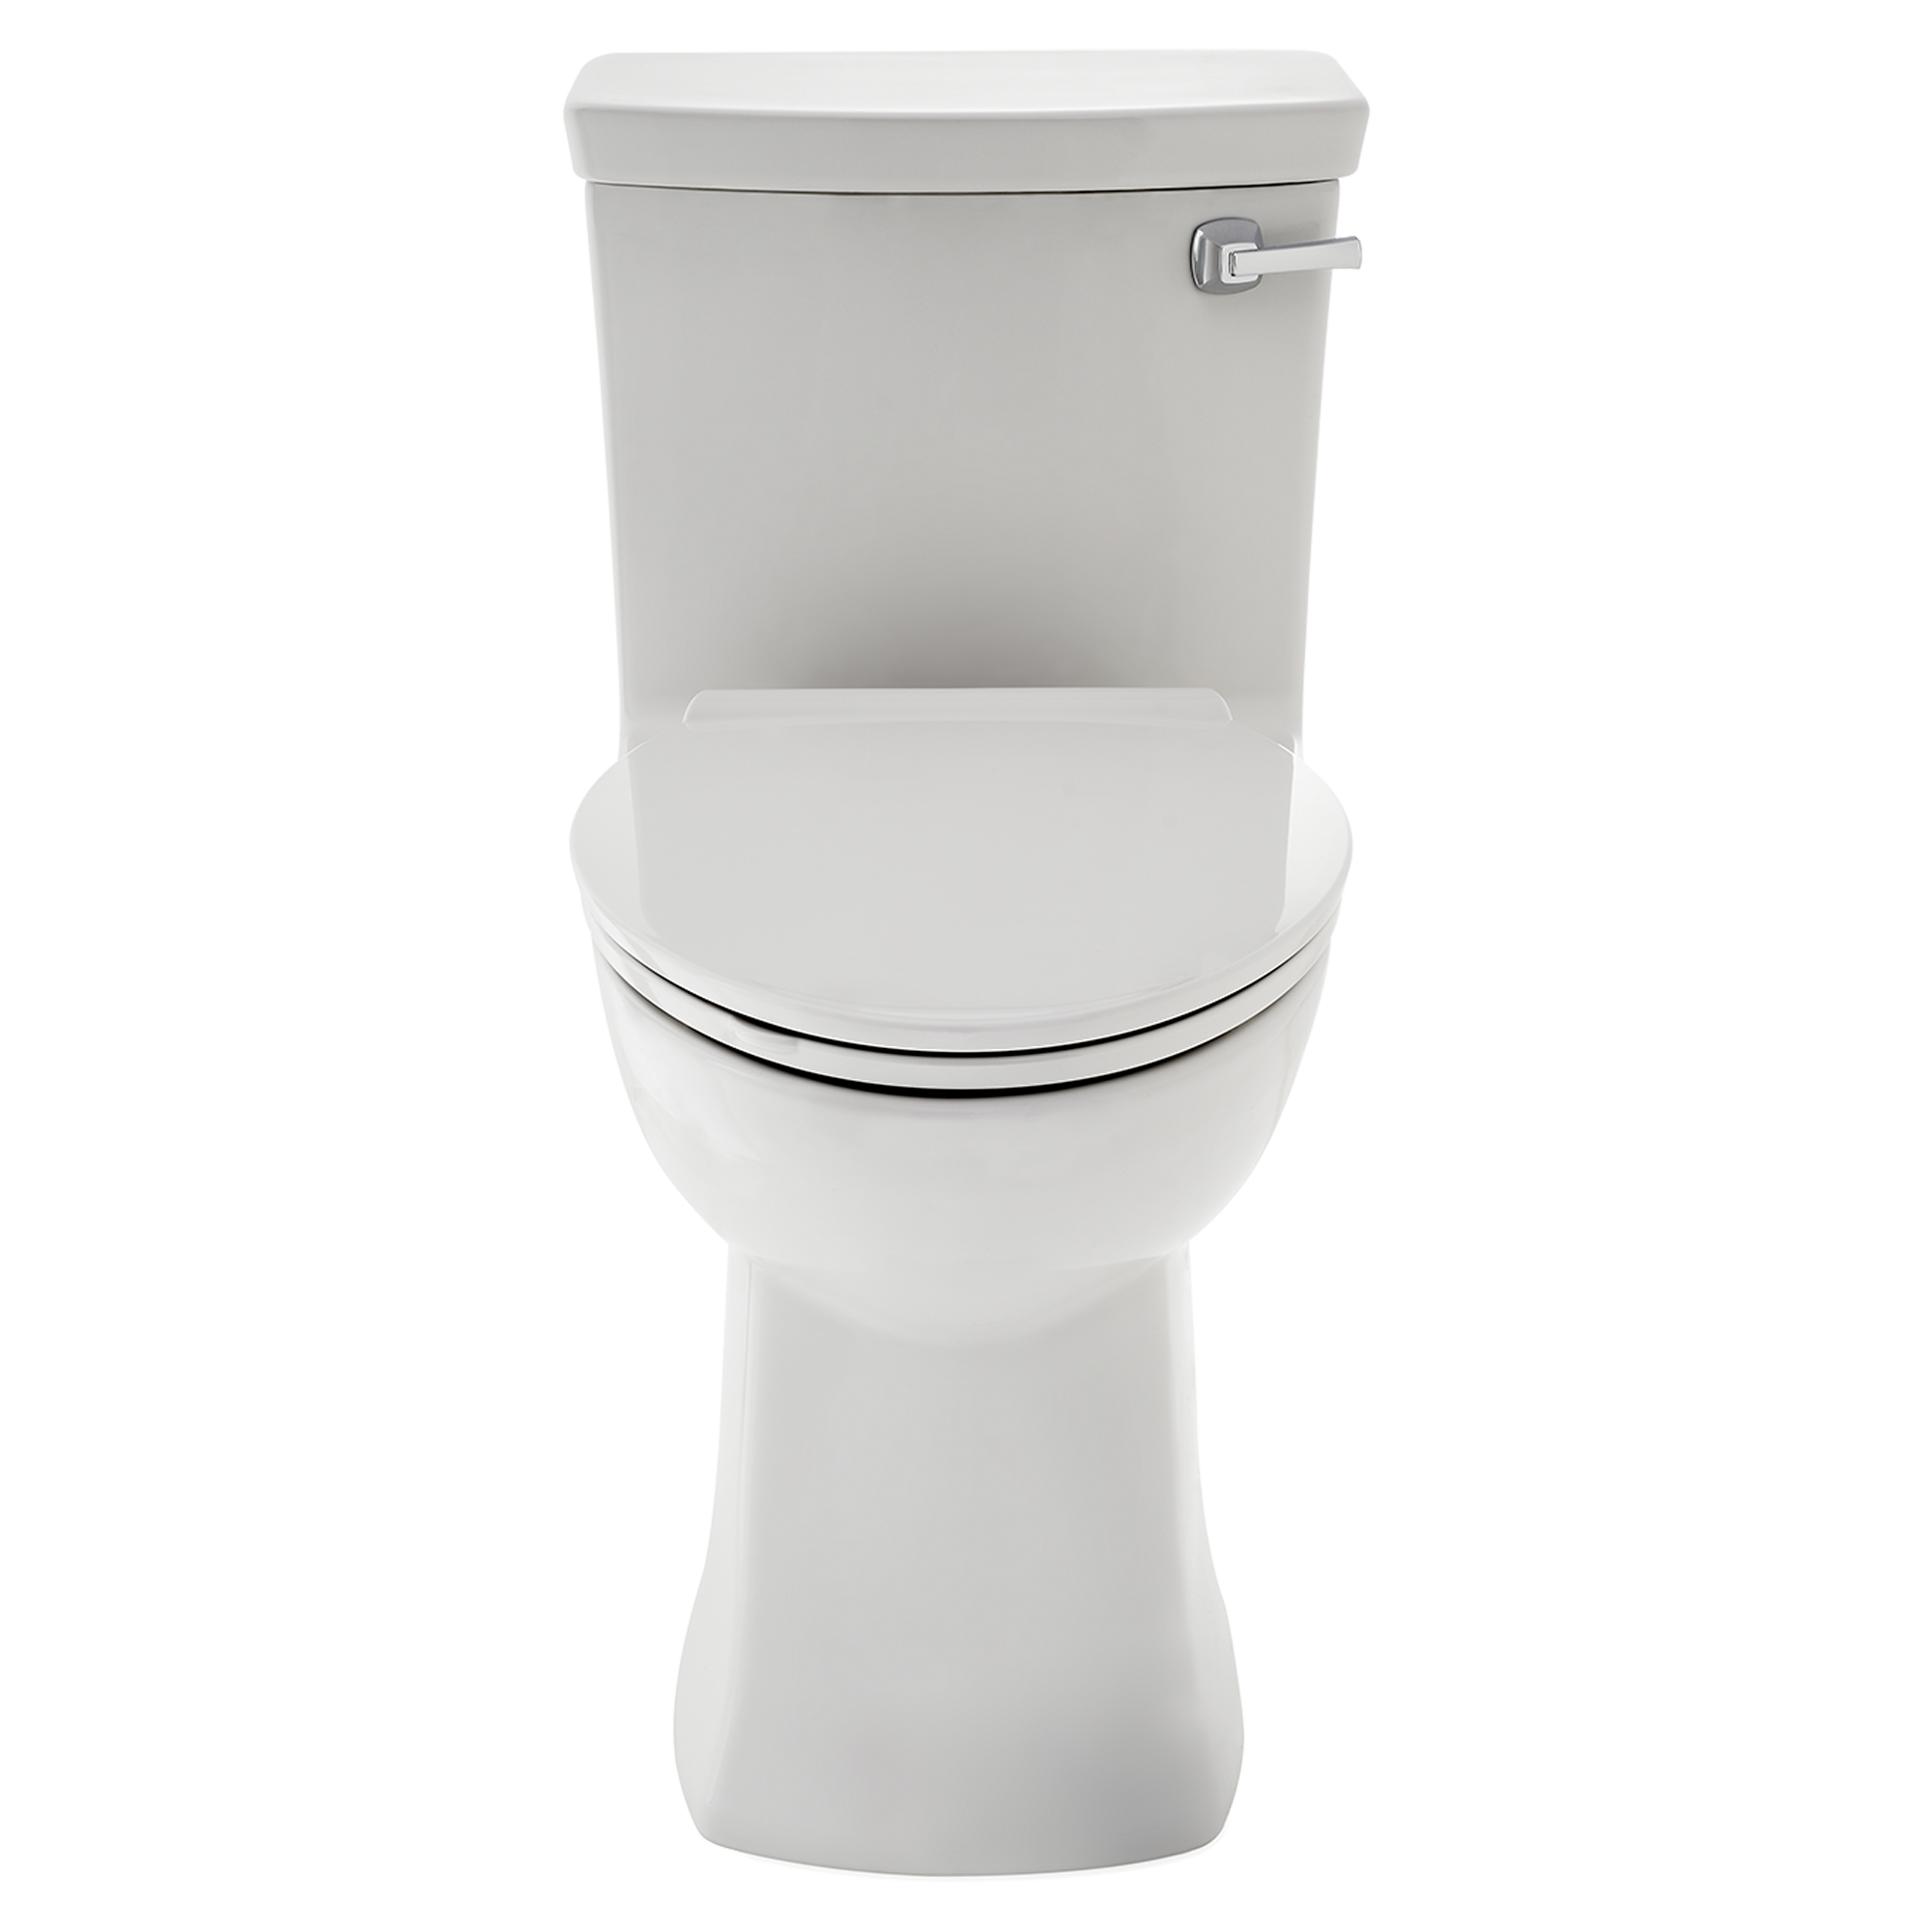 Toilette PNG image de haute qualité